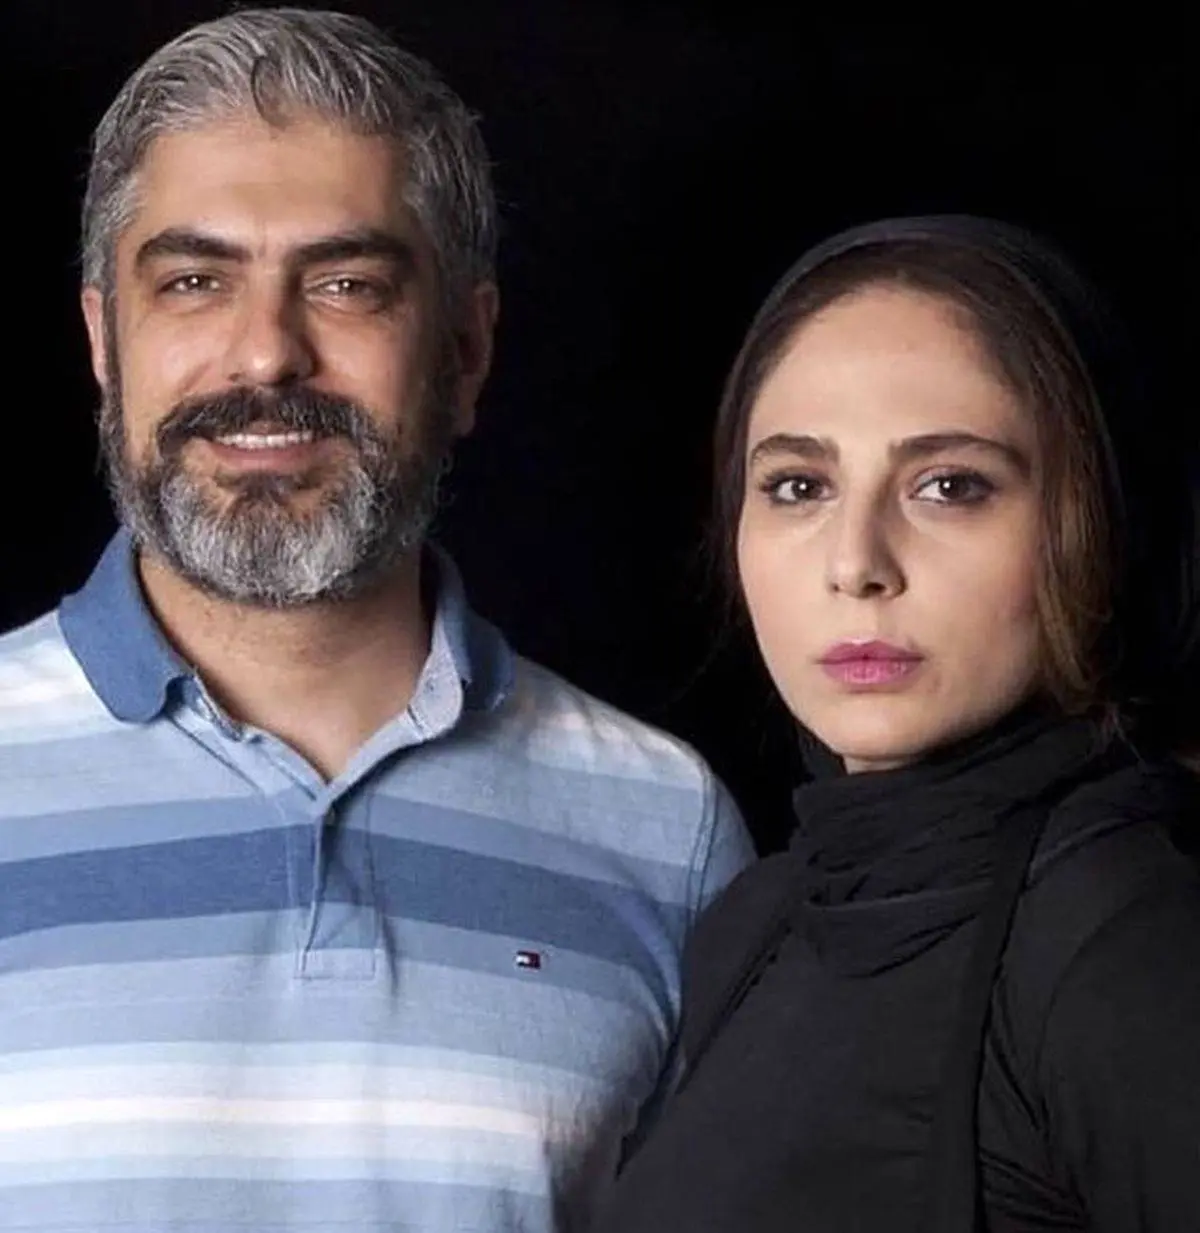 عکس دیده نشده از همسر دوم مهدی پاکدل در کنار پدرش + عکس 